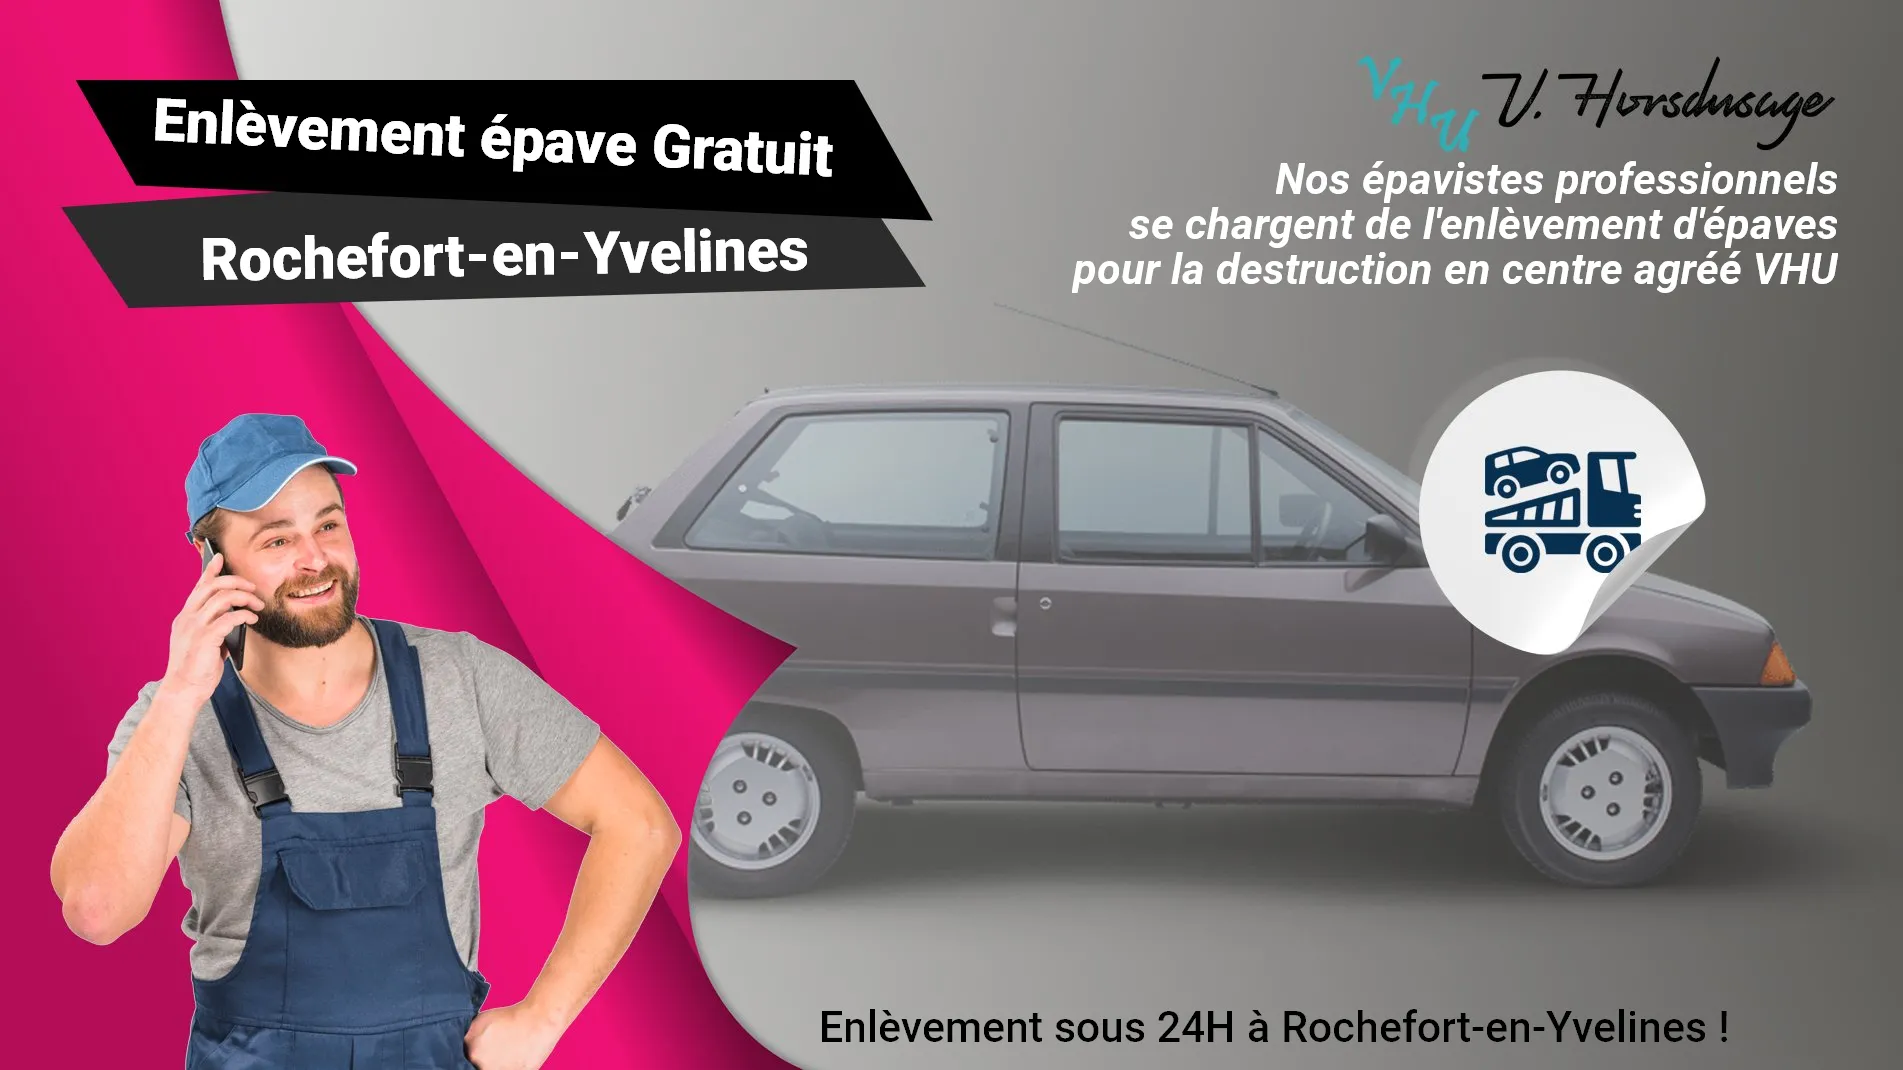 Pour un enlèvement gratuit à Rochefort-en-Yvelines, contactez nos épavistes agréé VHU